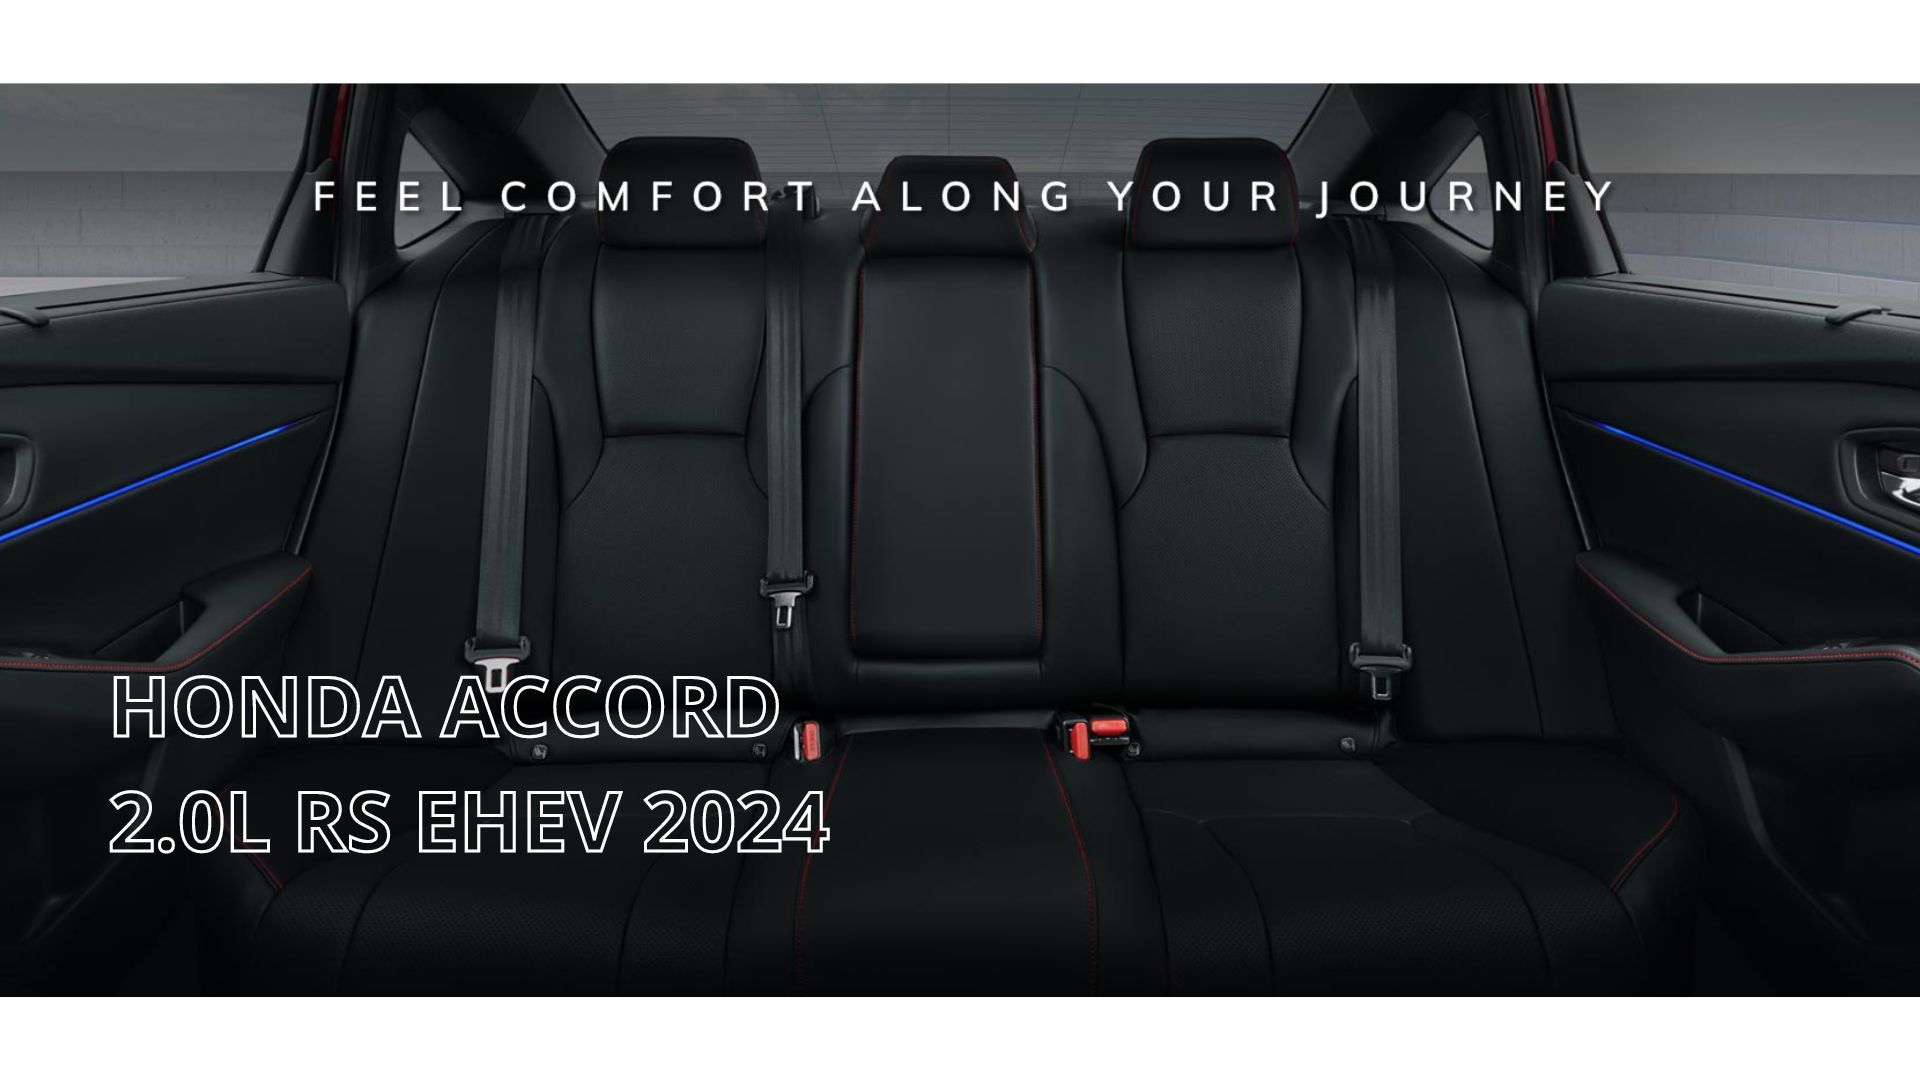 Mengapa Honda Accord 2.0L RS eHEV 2024 Layak Diperhitungkan di Segmen Sedan Hibrida